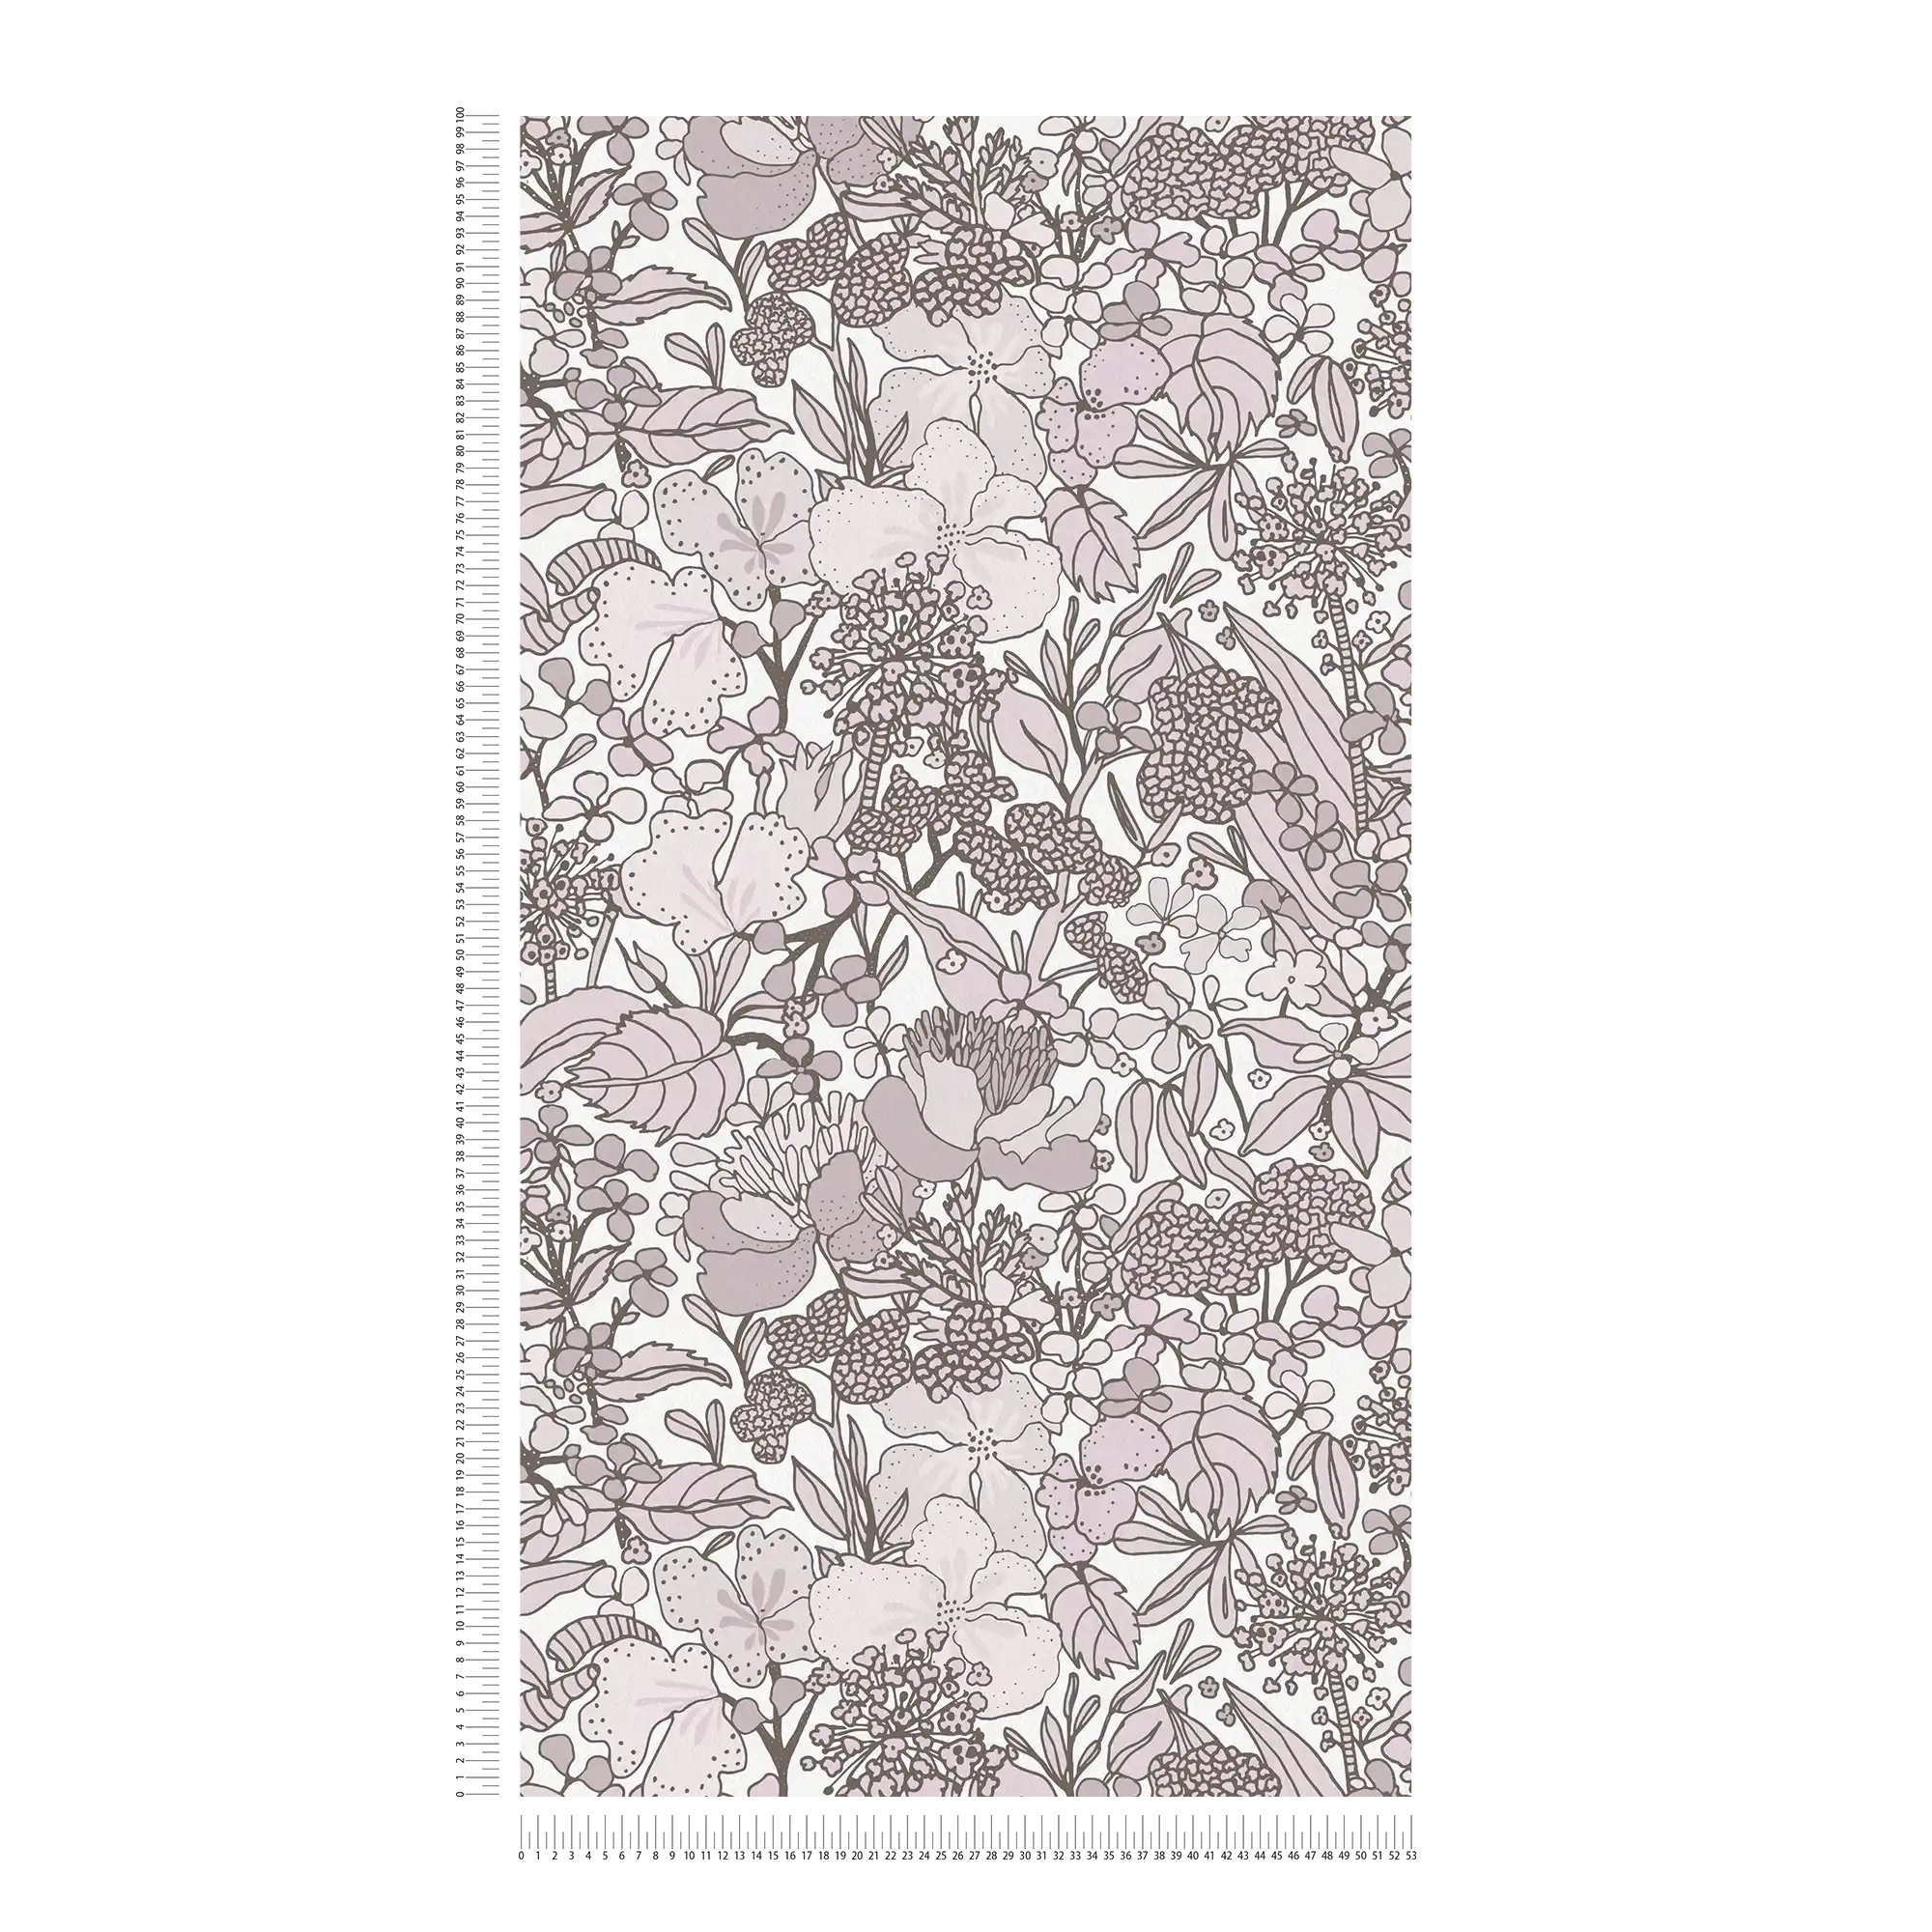             Carta da parati grigio beige con motivi floreali in stile disegno - crema, marrone, bianco
        